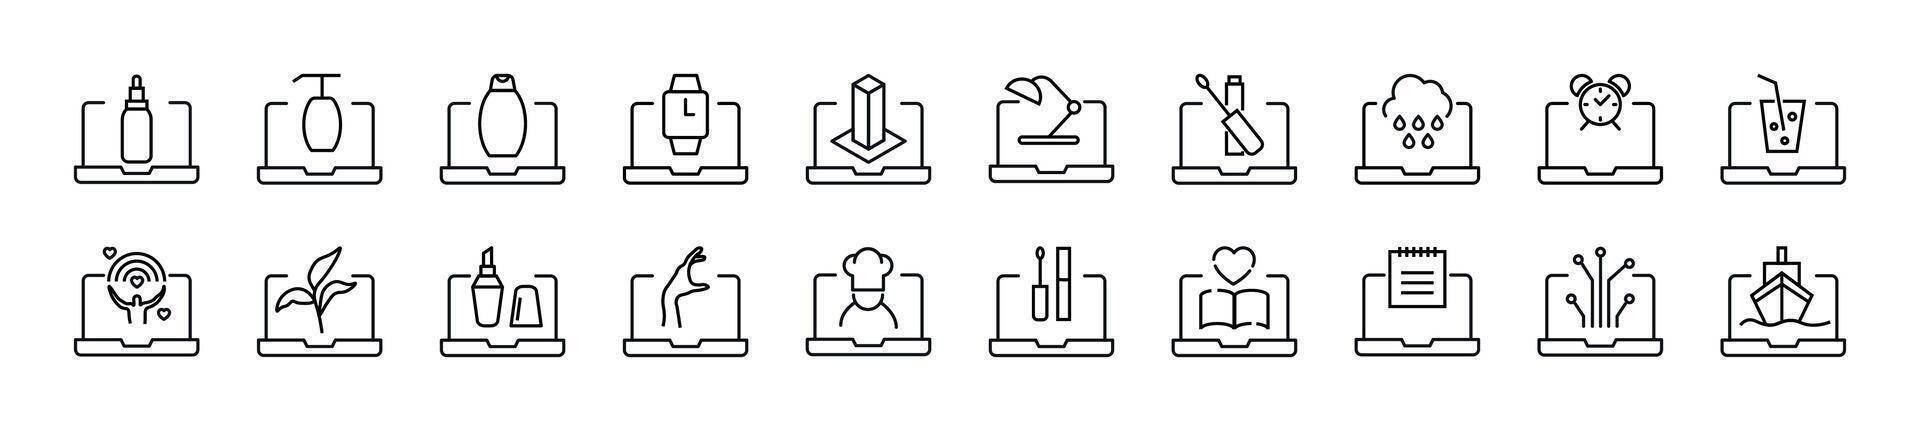 samling av översikt symbol av objekt på bärbar dator. redigerbar stroke. enkel linjär illustration för butiker, butiker, banderoller, design vektor